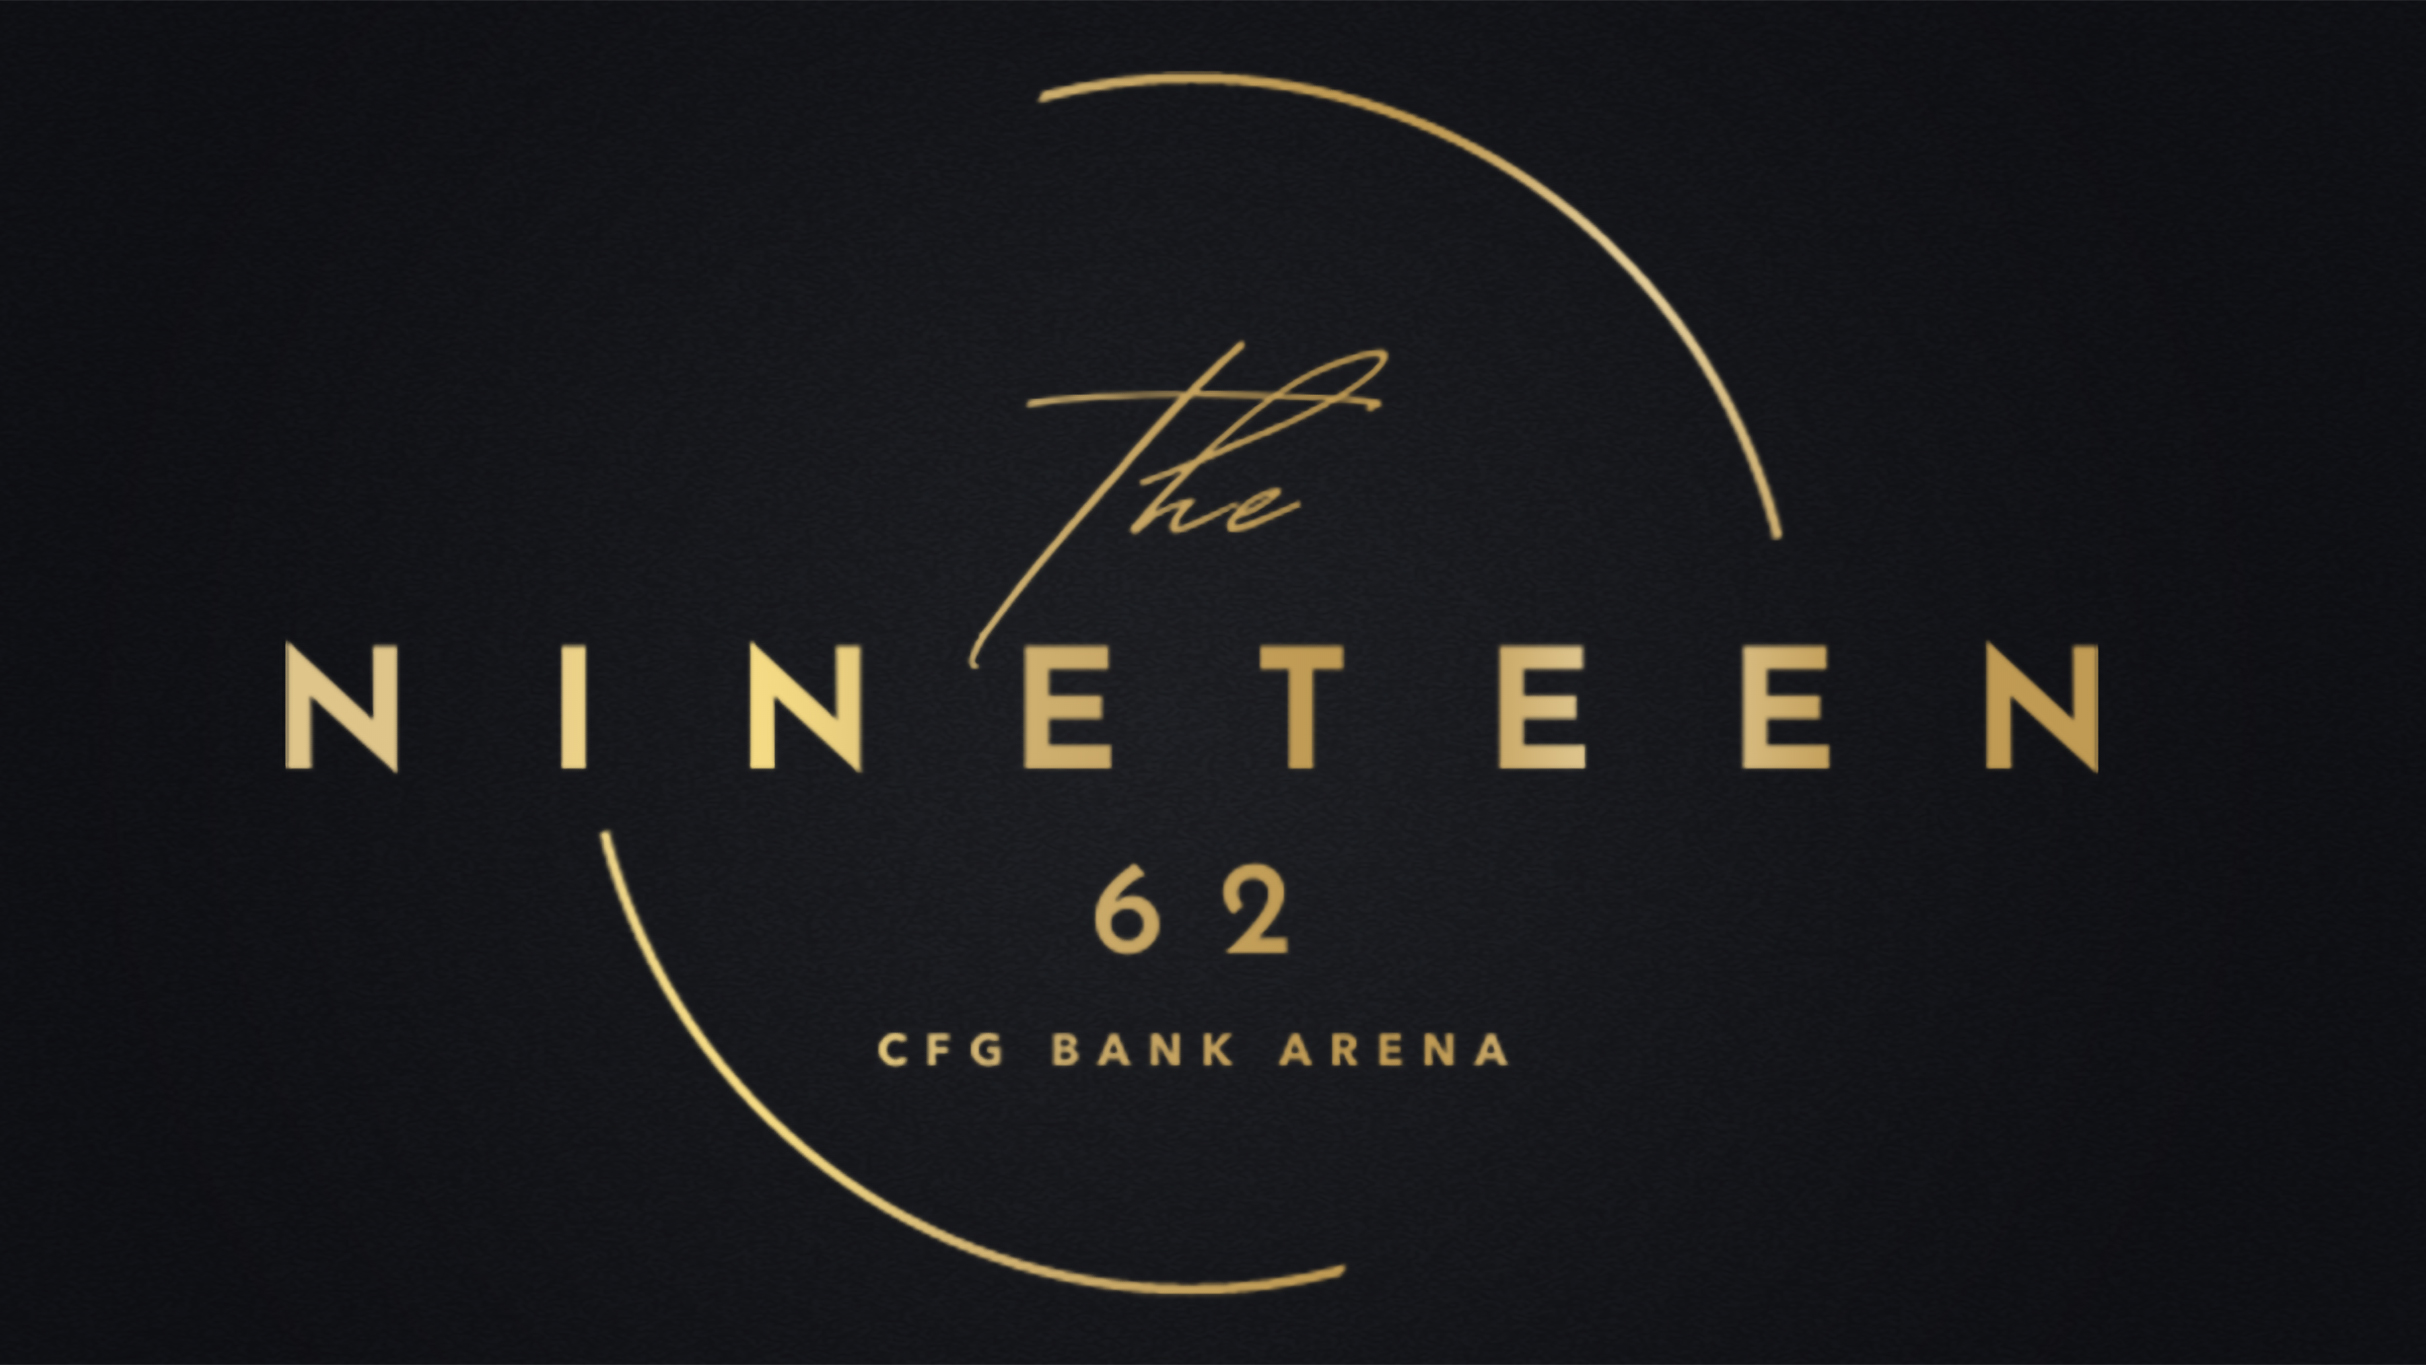 The NINETEEN 62 at CFG Bank Arena - NF